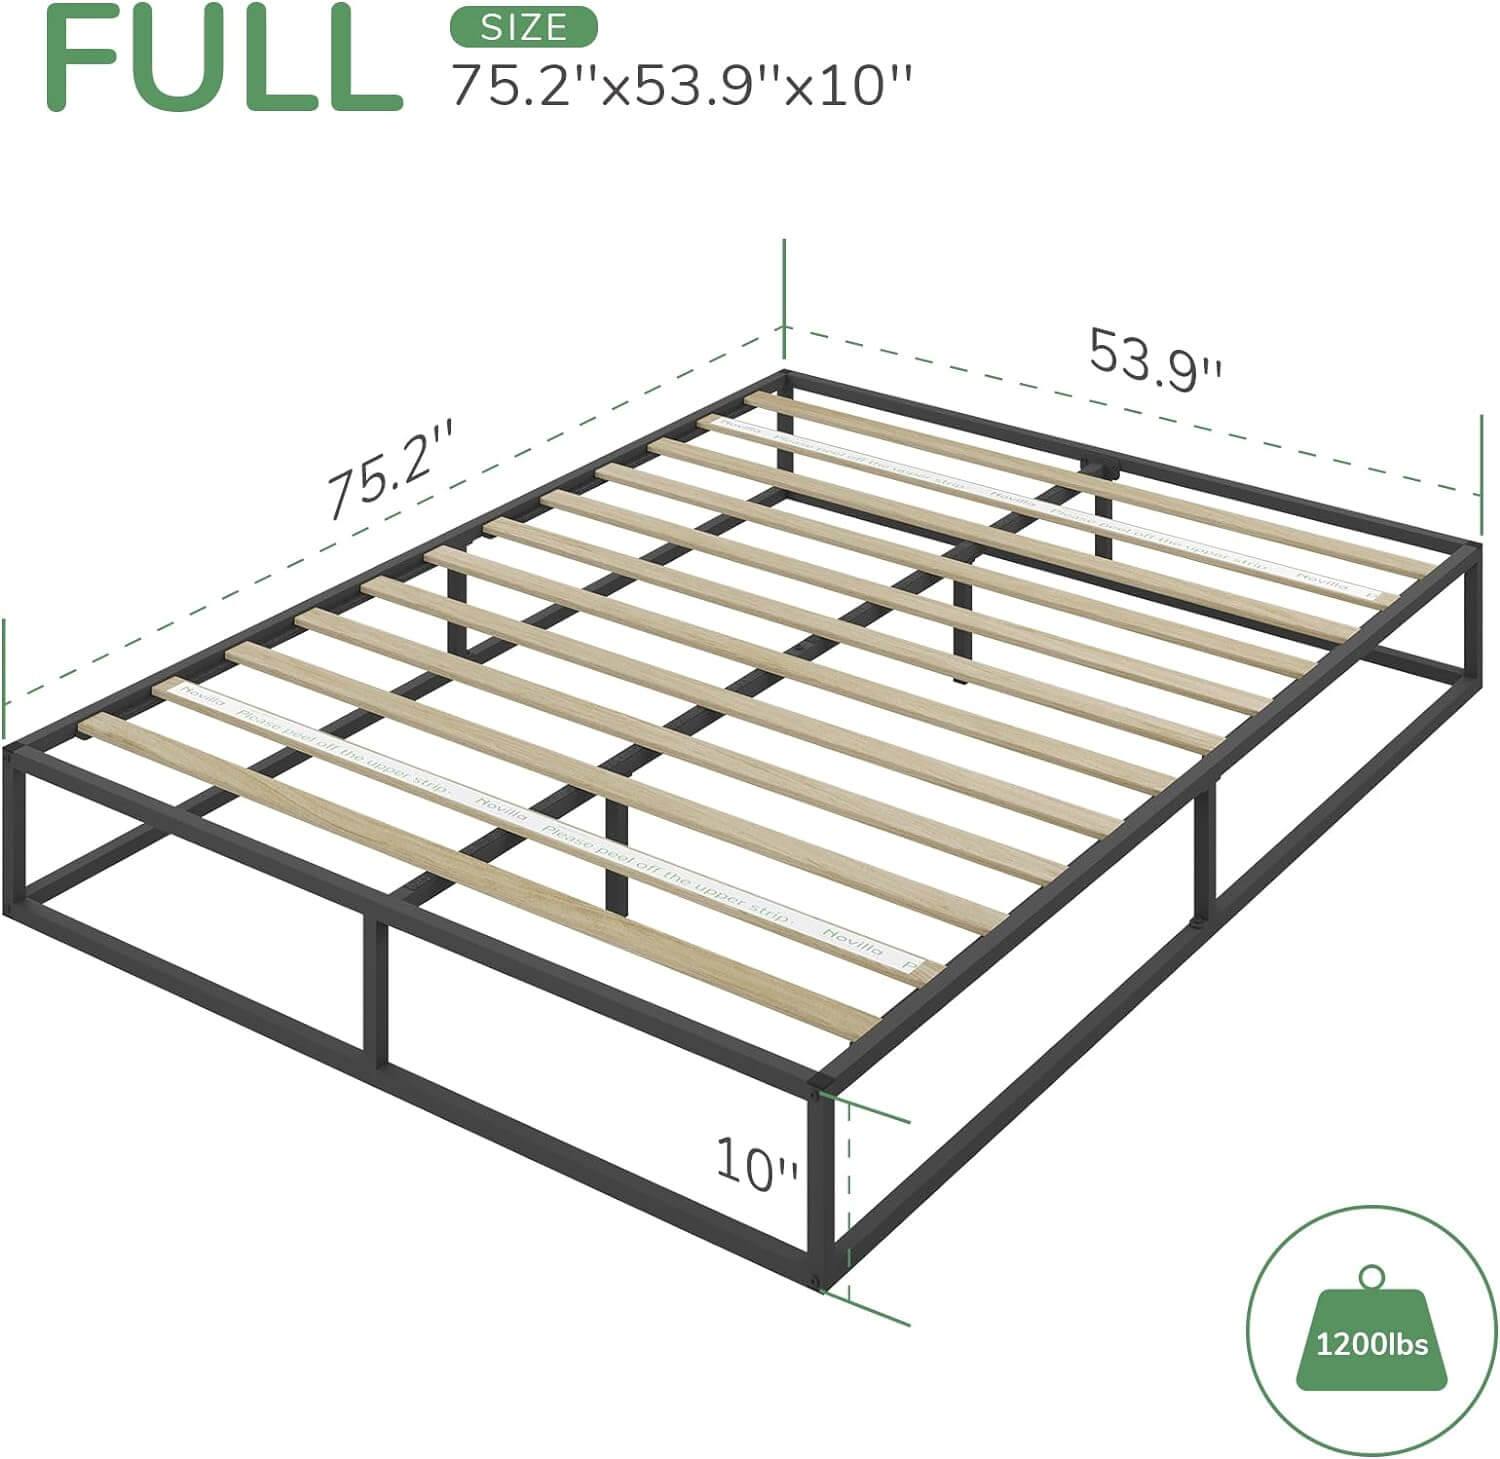 Minimalism Metal Platform Bed Frame with wood slats